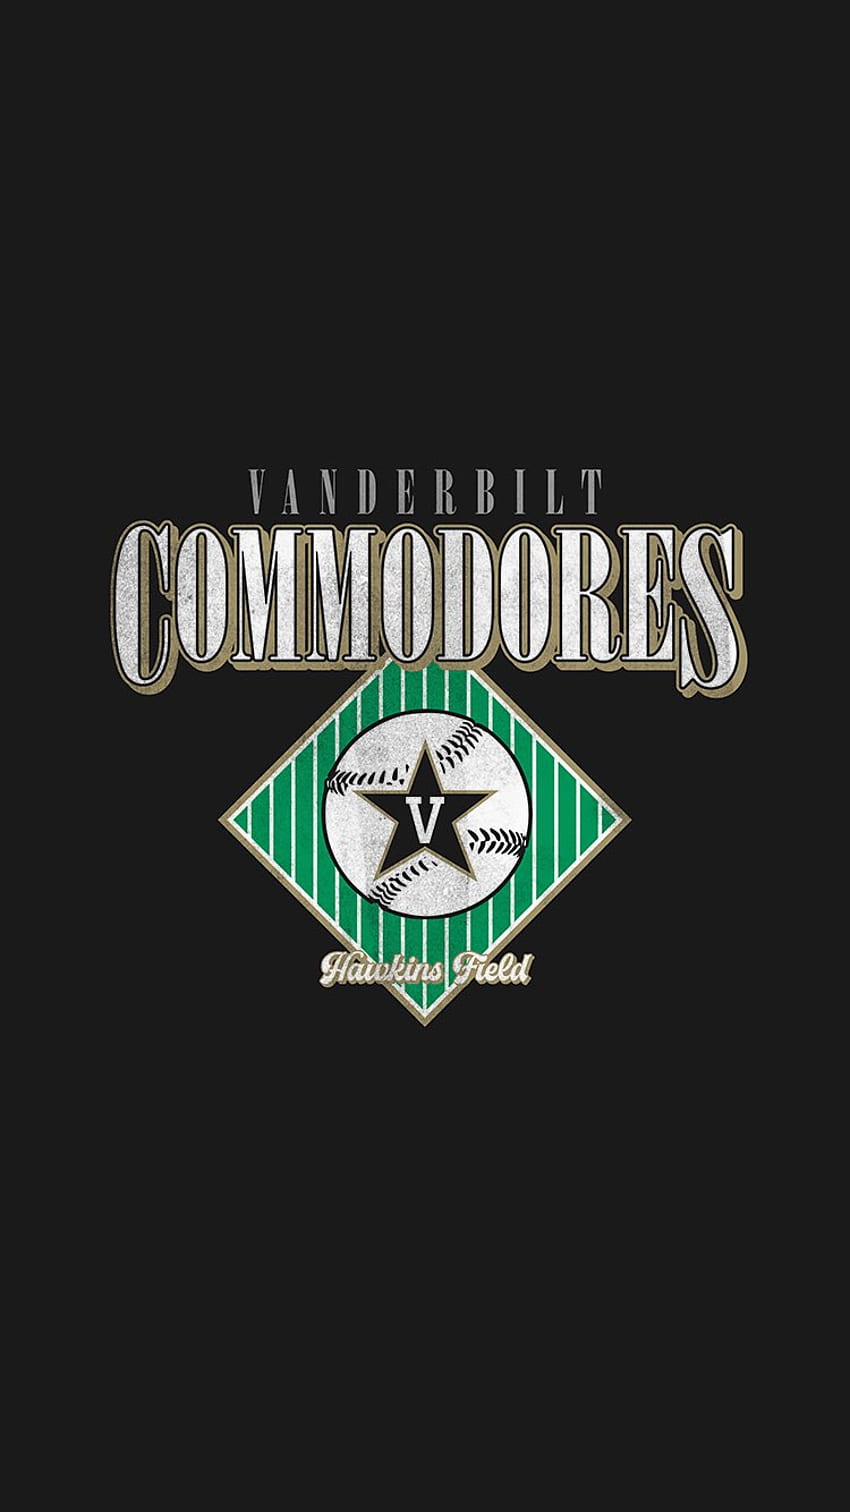 Vanderbilt Commodores Baseball Wallpapers  Wallpaper Cave